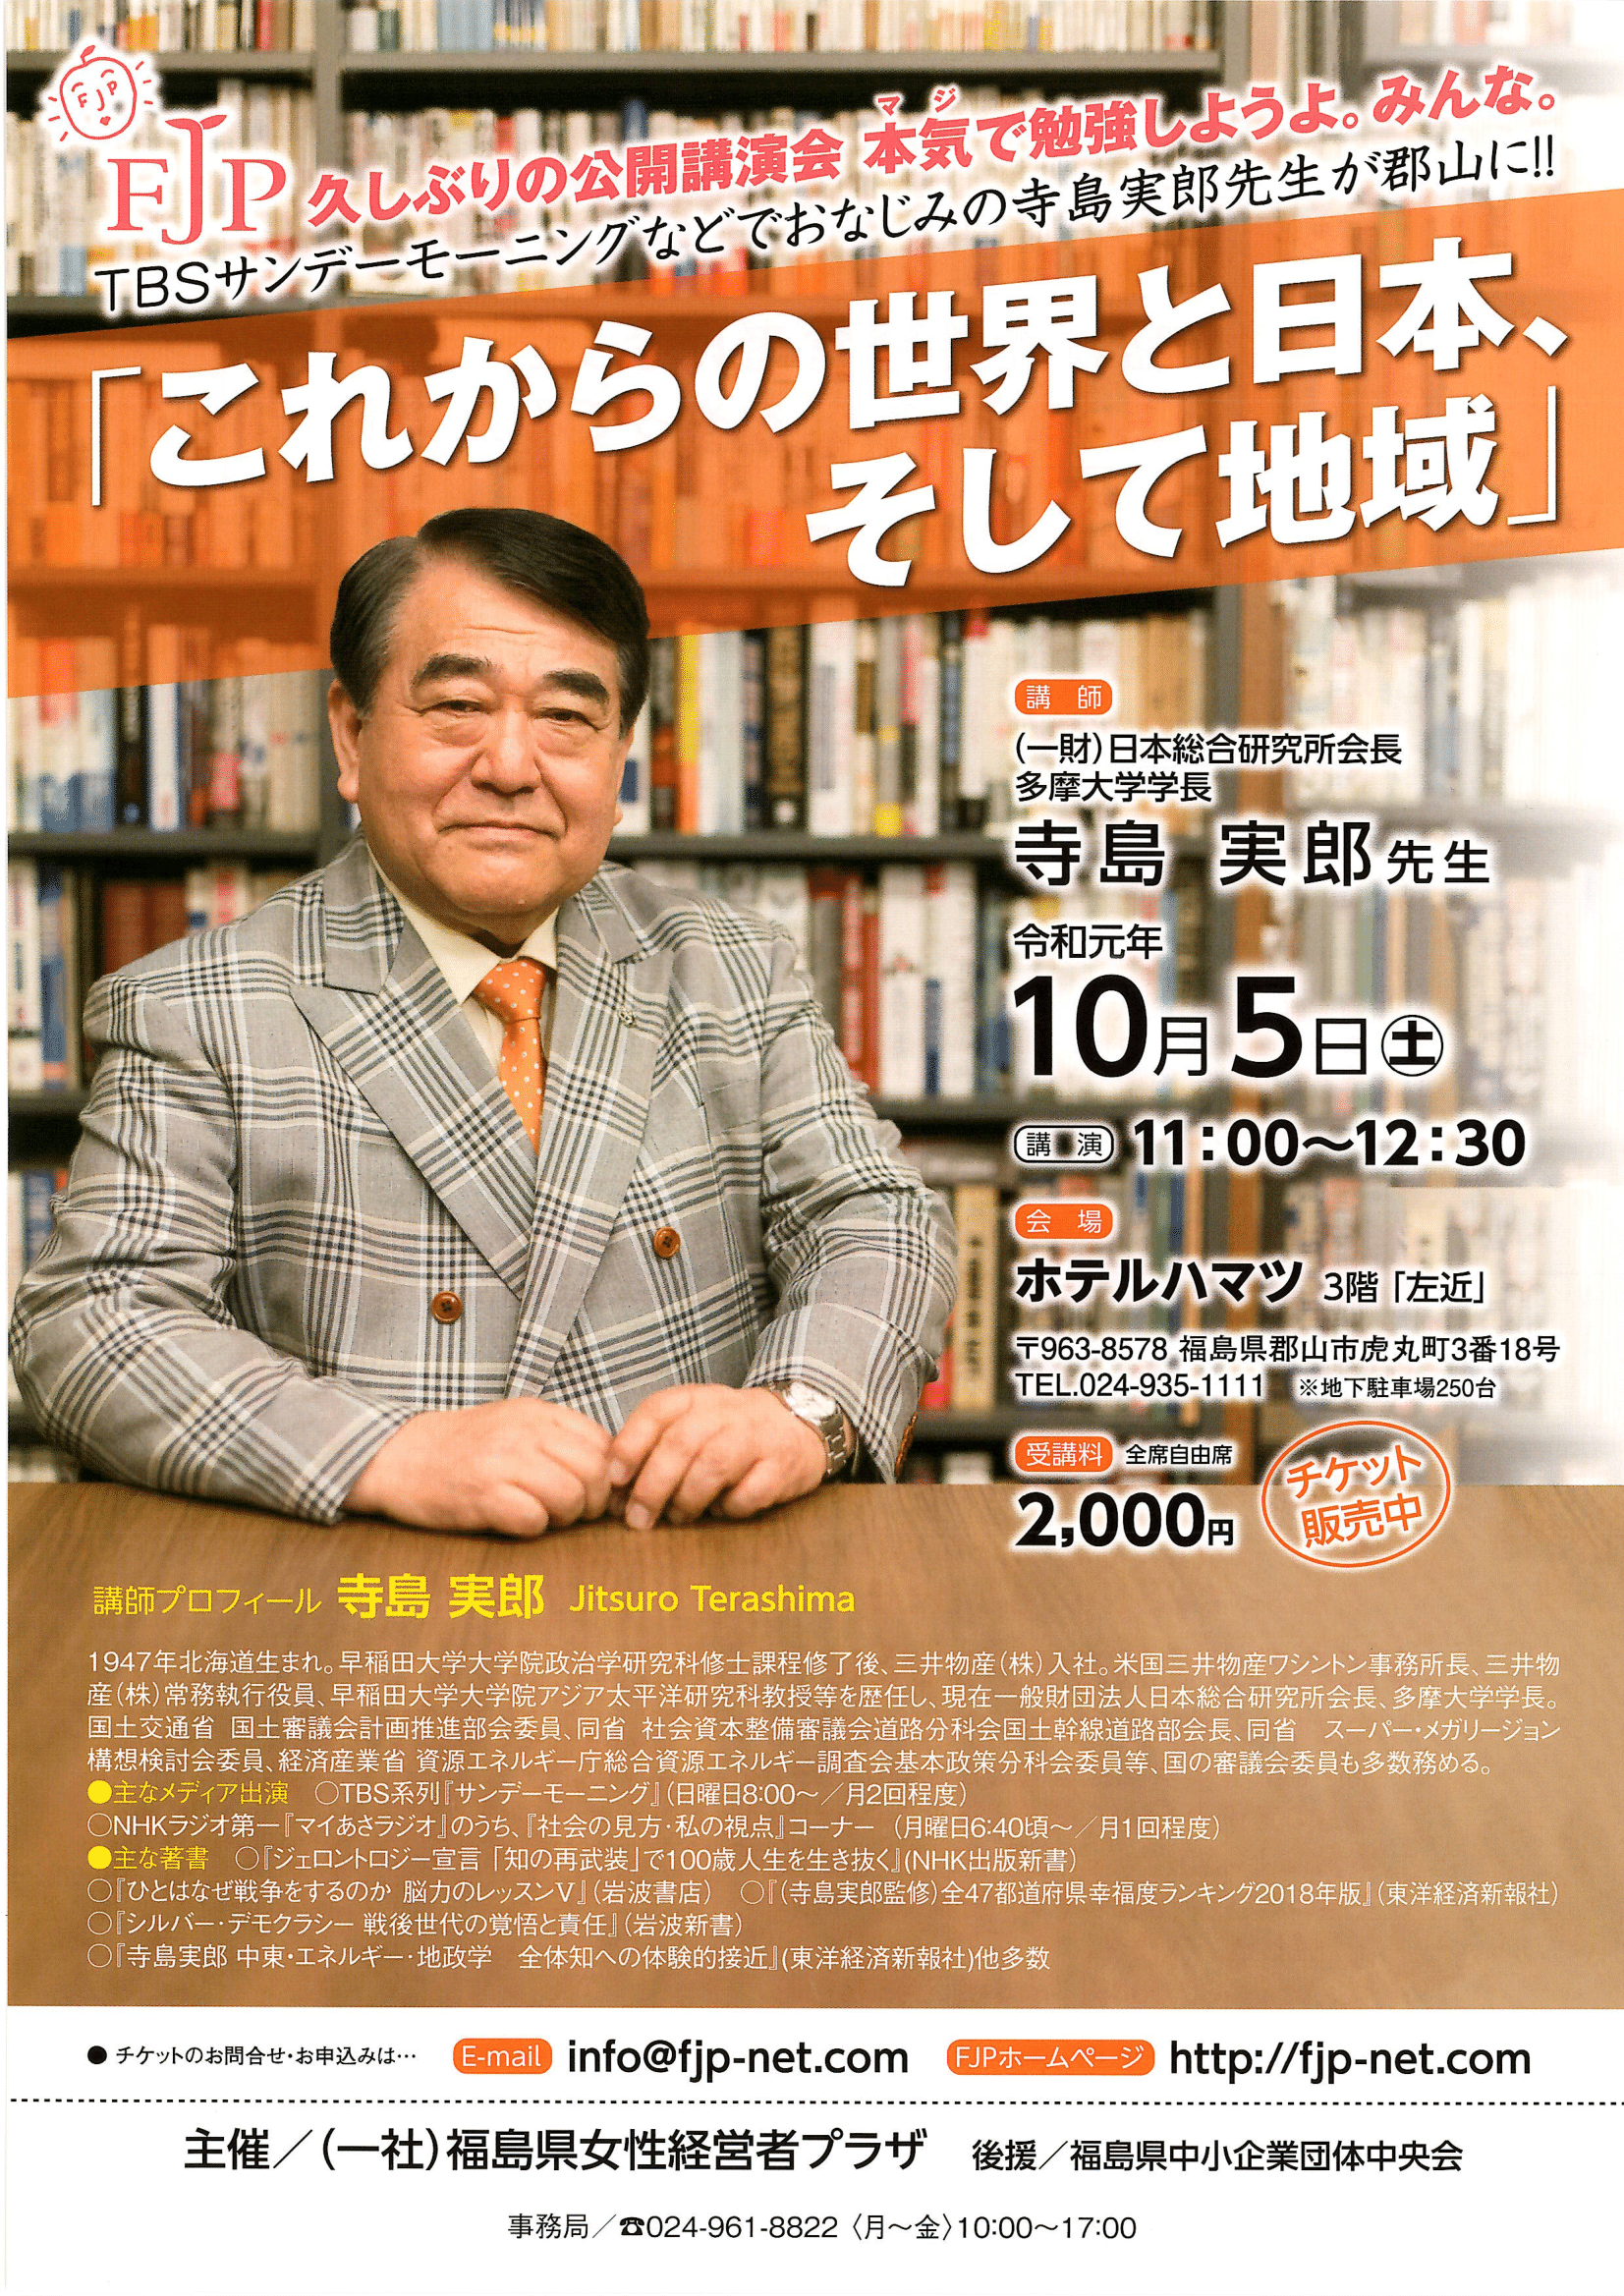 寺島実郎先生「これからの世界と日本、そして地域」 | FJP-福島県女性経営者プラザ